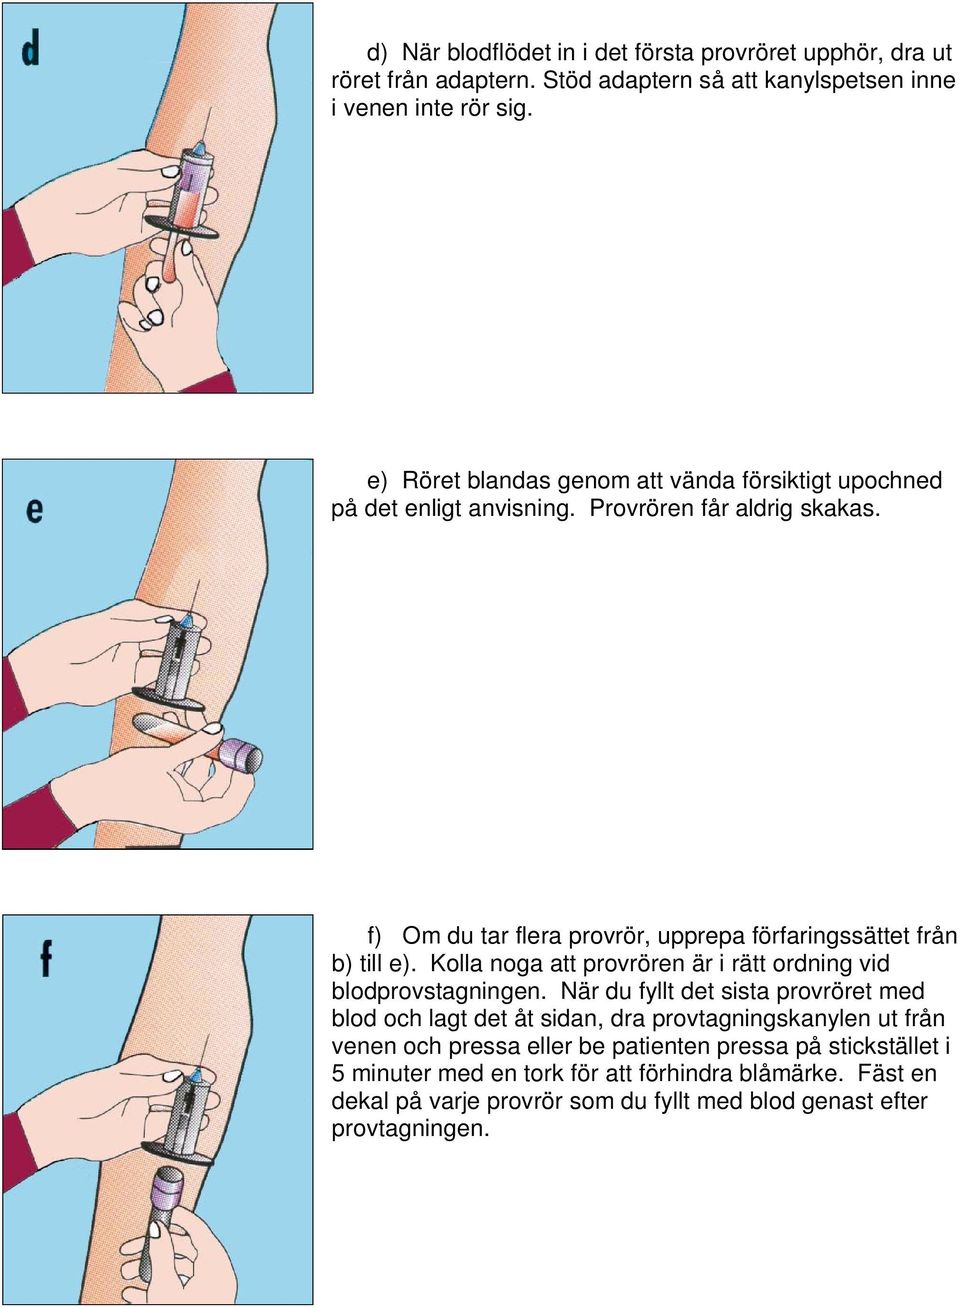 f) Om du tar flera provrör, upprepa förfaringssättet från b) till e). Kolla noga att provrören är i rätt ordning vid blodprovstagningen.